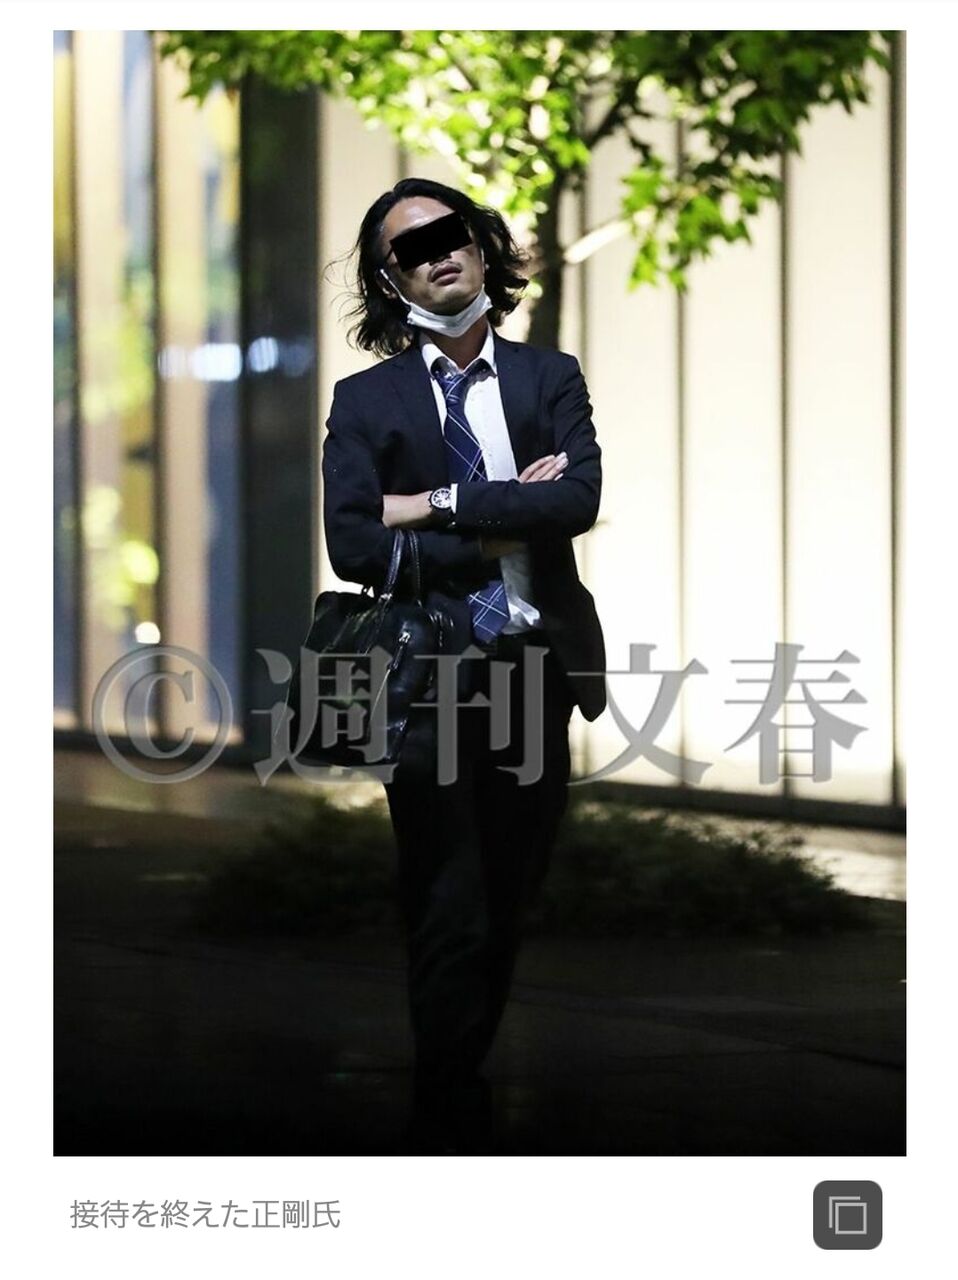 【画像あり】菅首相の長男がカタギに見えないと話題に | sakamobi.com